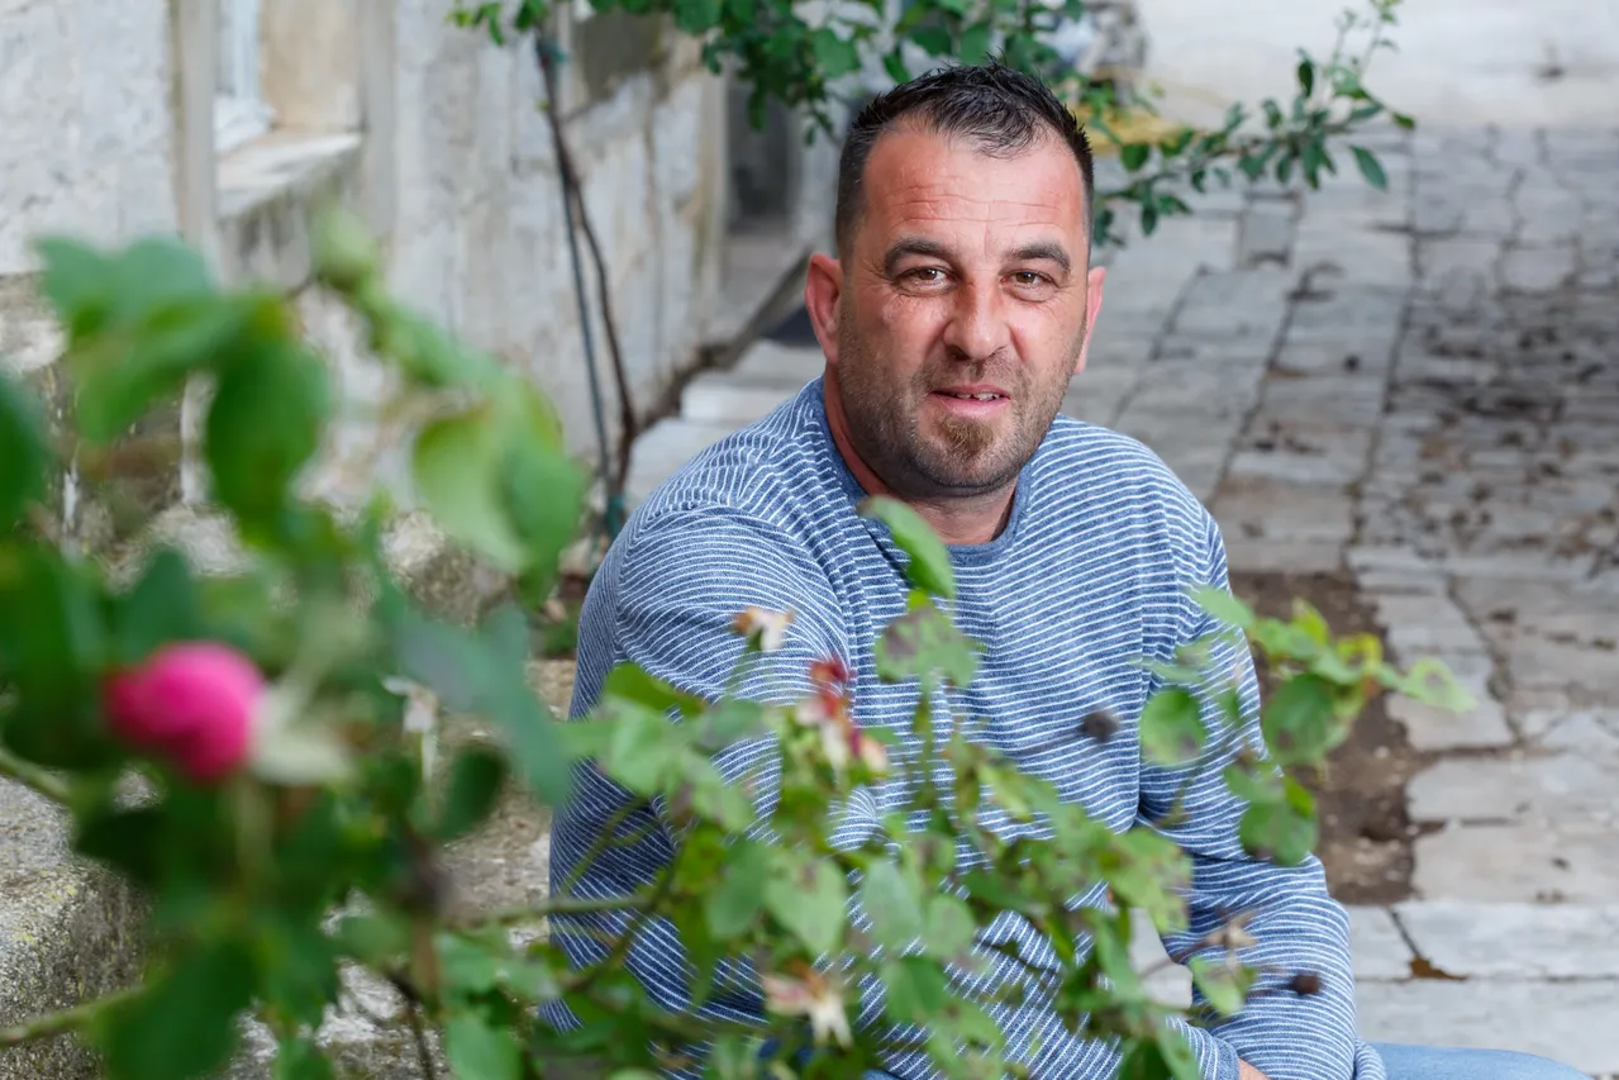 Ante Munitić (44) stiže iz mjesta Donja Banda na Pelješcu, električar je po struci te ima vinograd i konobu. Za sebe kaže da je ponekad predobar i dosta tolerantan, ali i temperamentan te tvrdoglav.